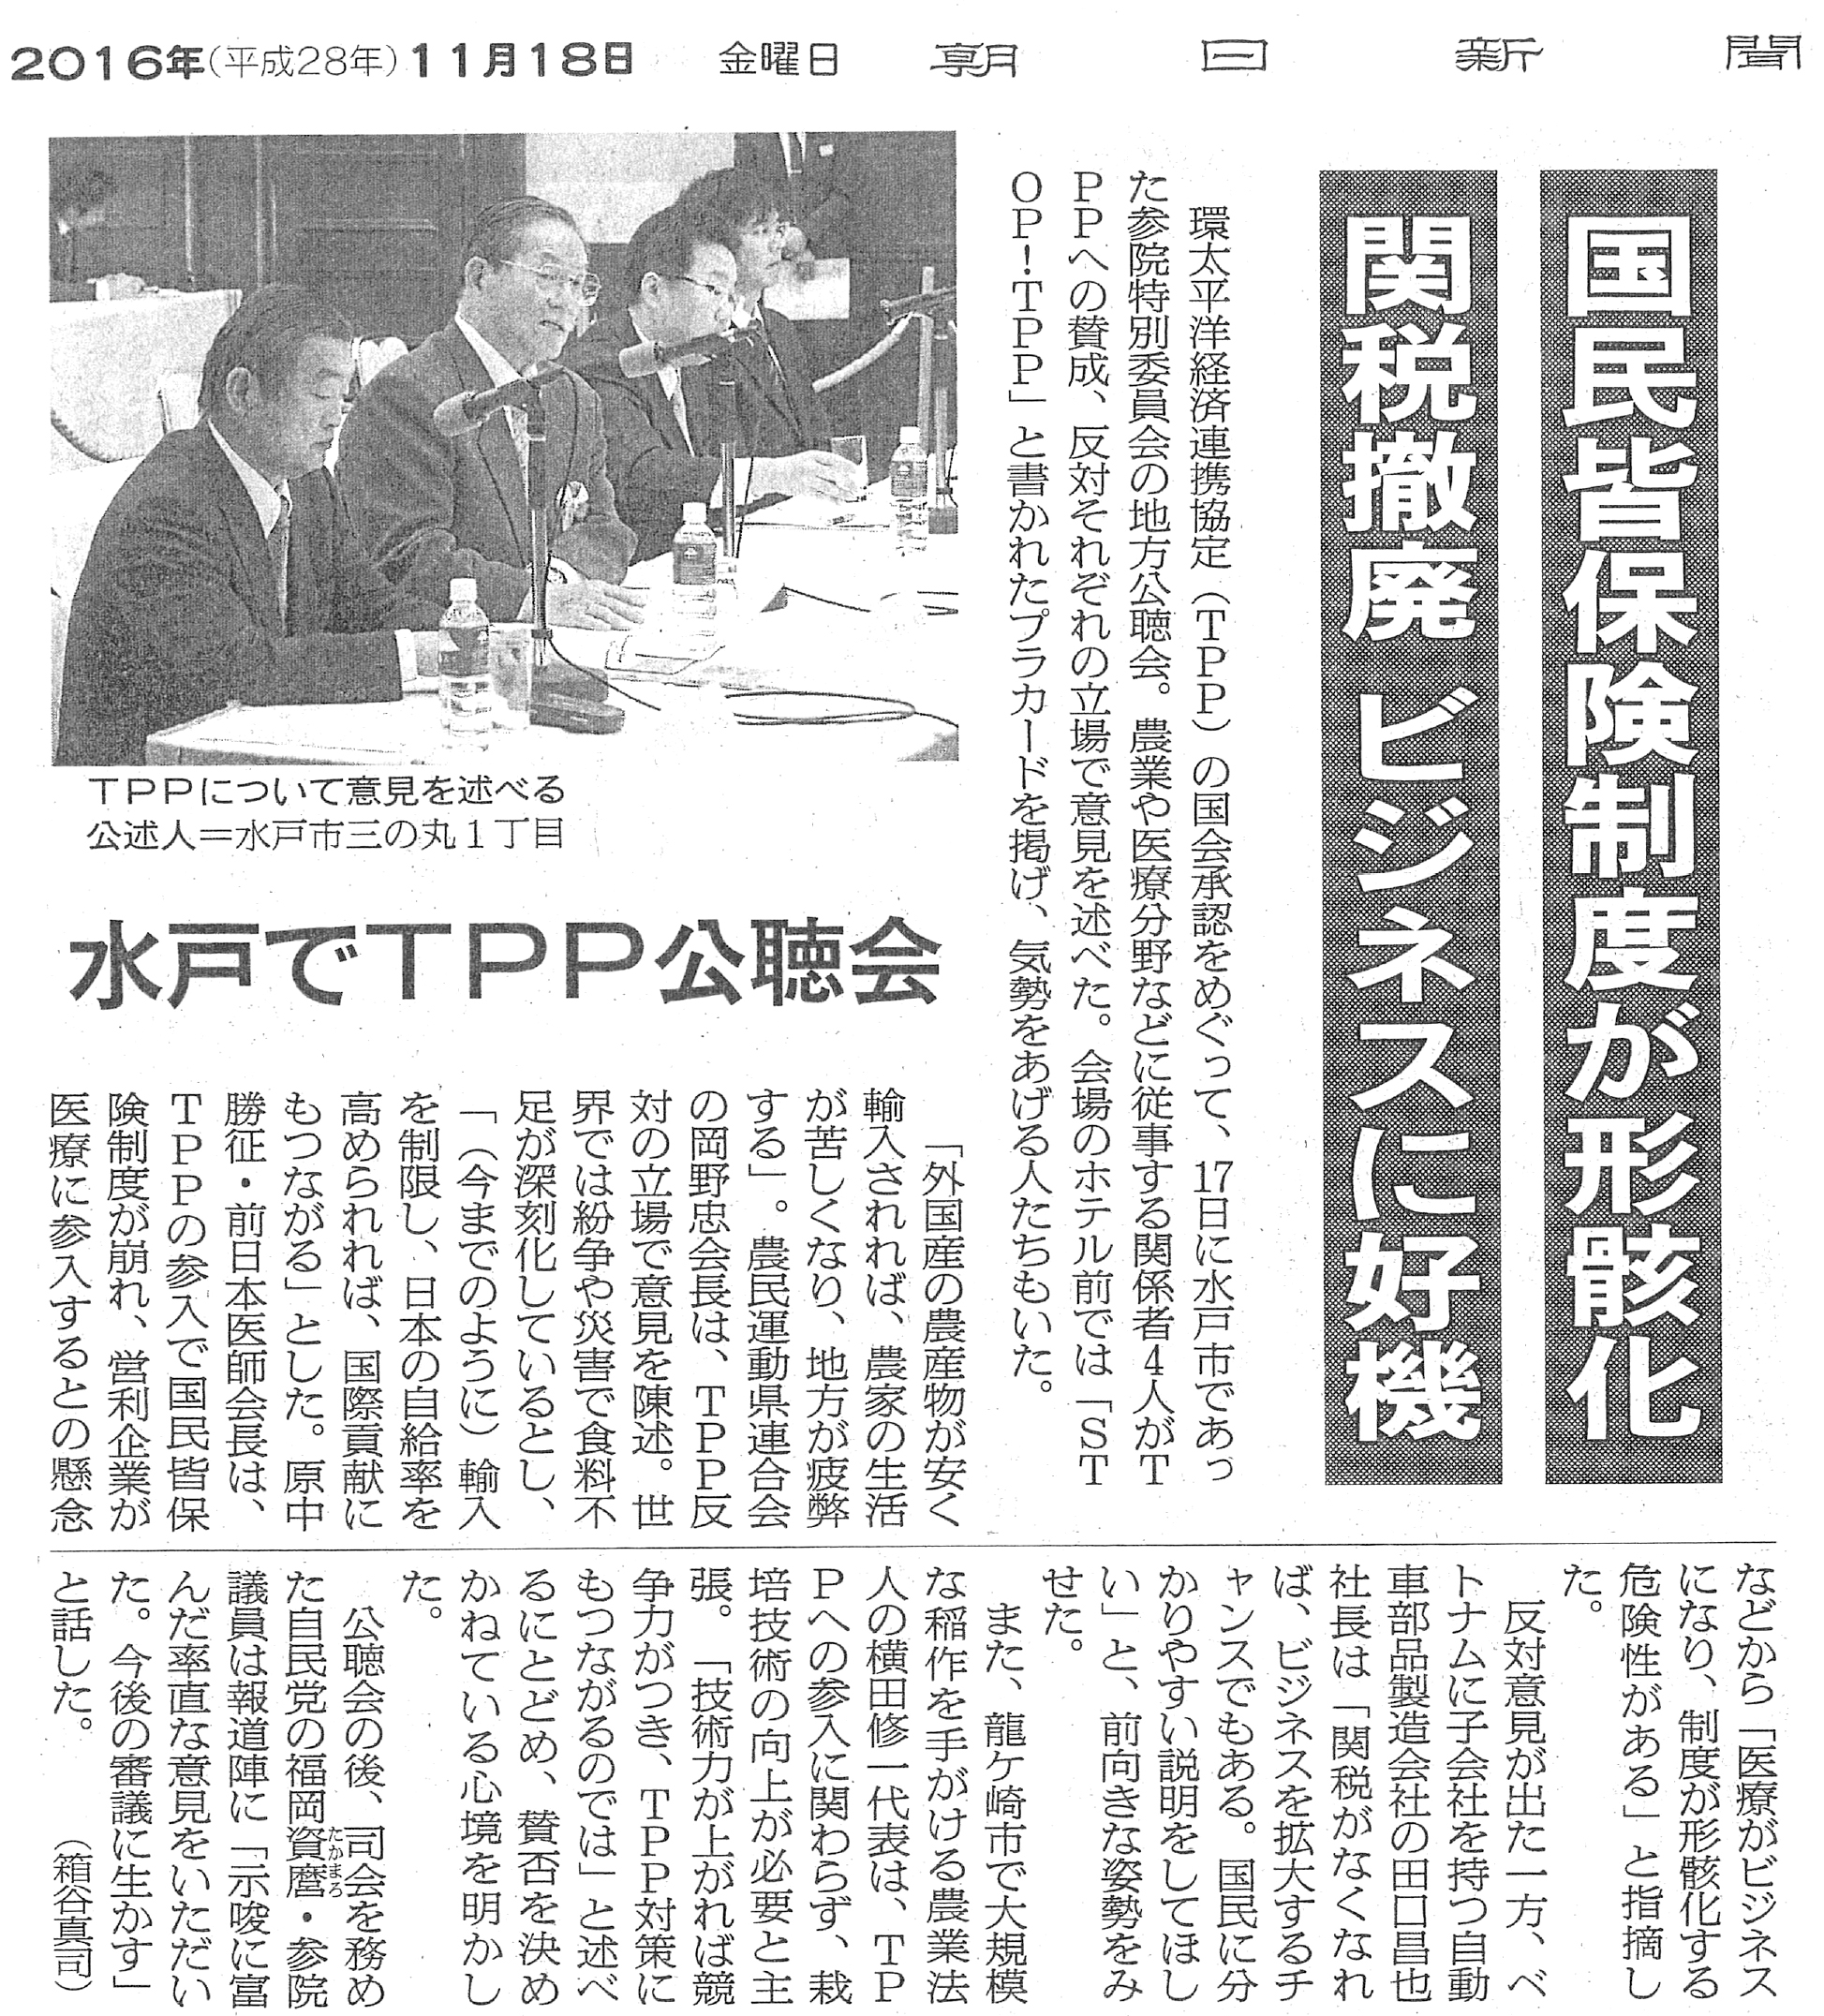 【朝日新聞】国民皆保険制度が形骸化　関税撤廃ビジネスに好機